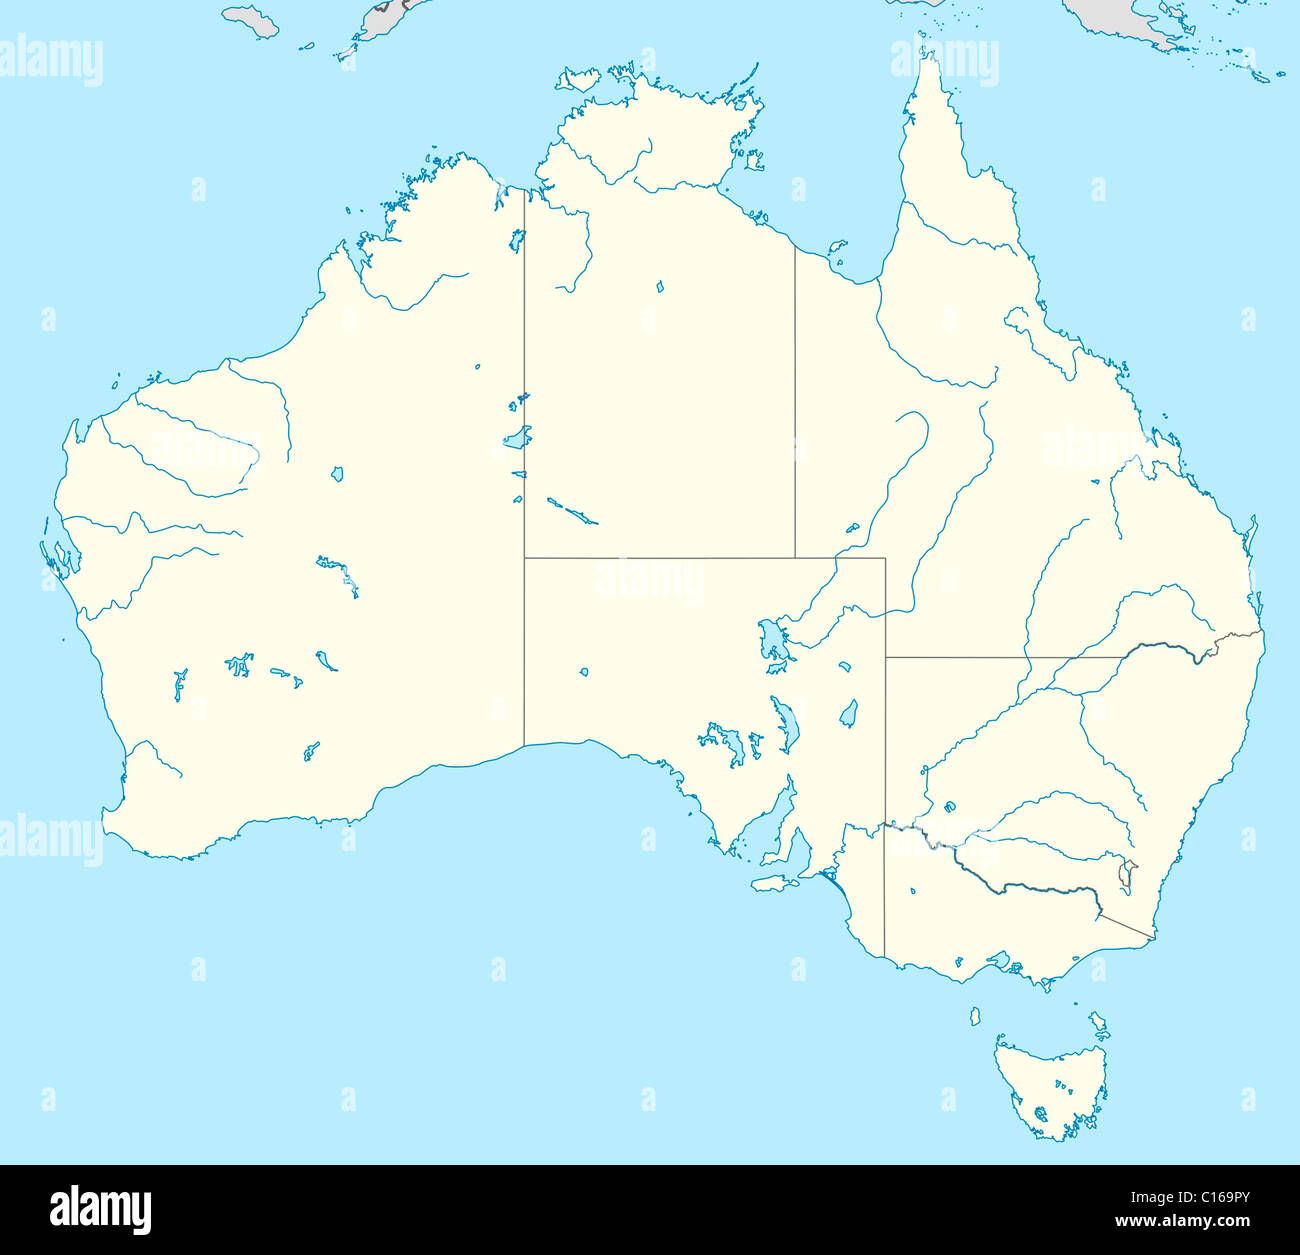 Karte von Australien mit Staaten markiert dargestellt. Stockfoto